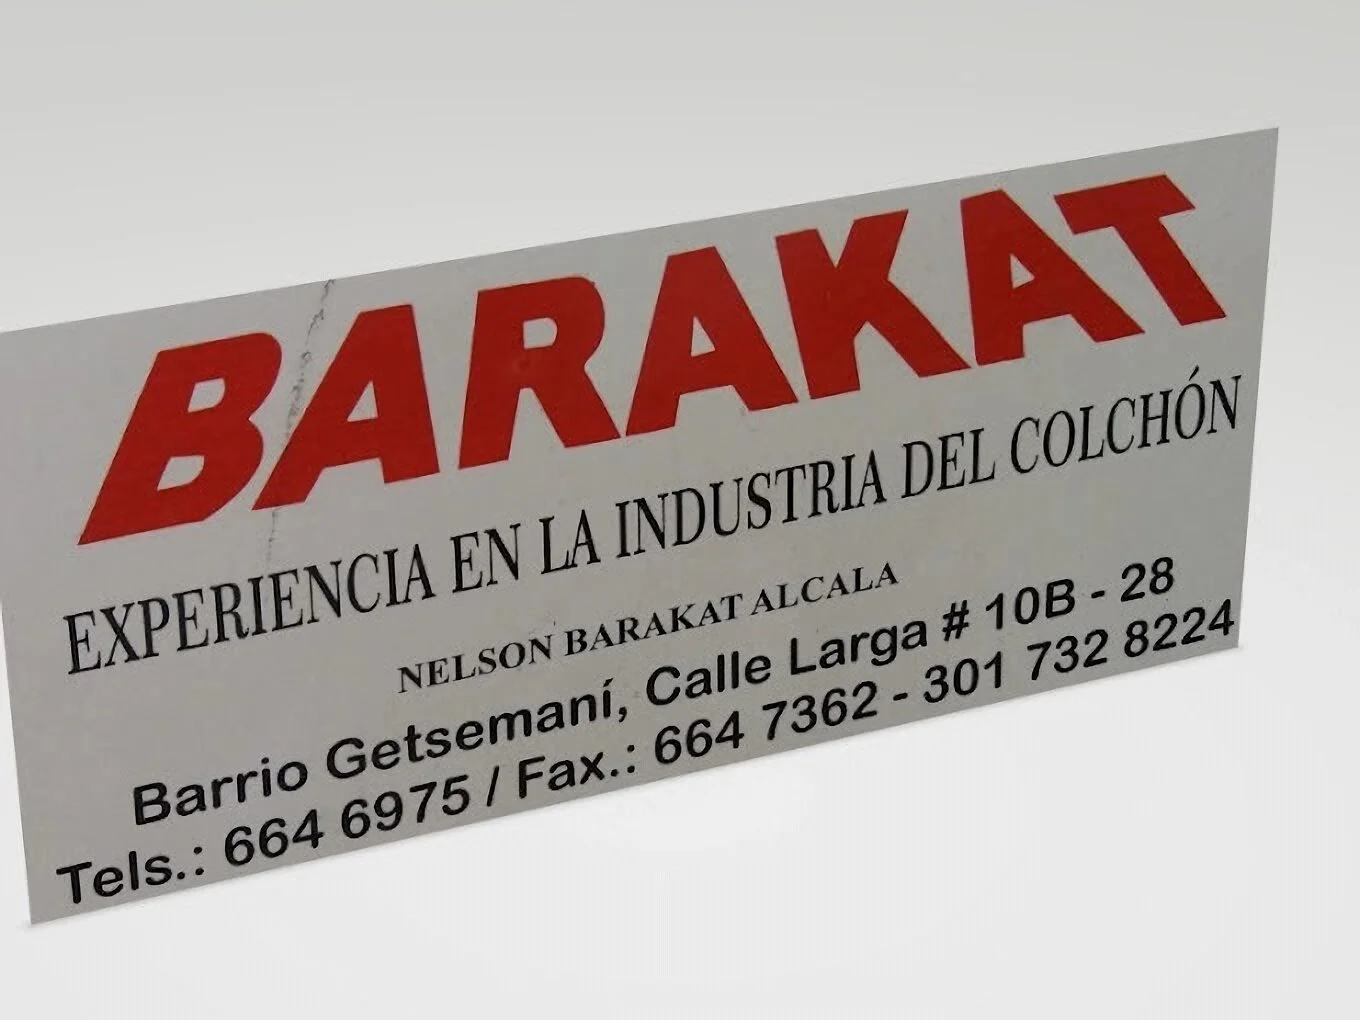 Colchones Barakat-4778